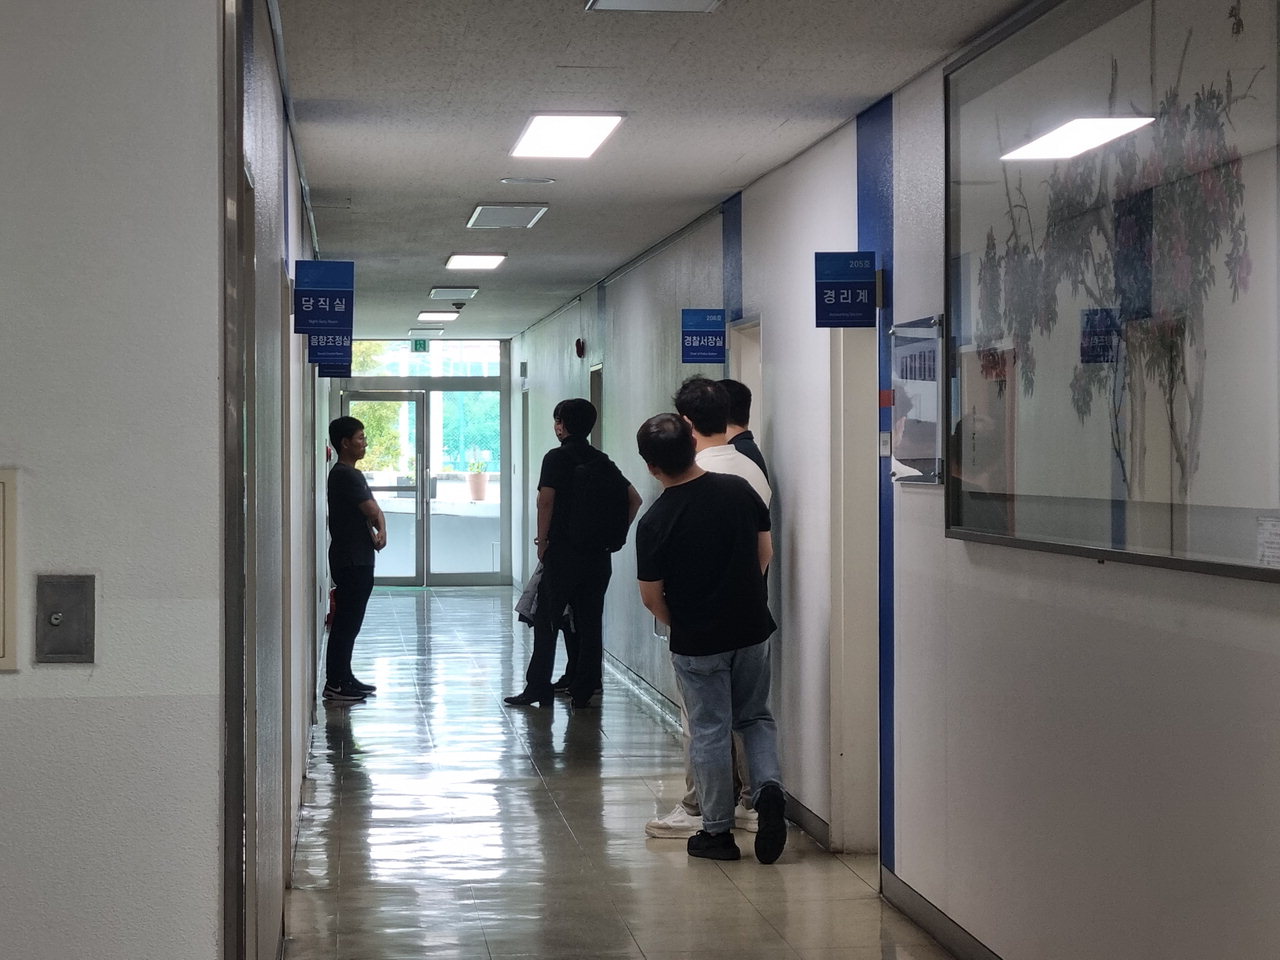 24일 오전 9시 30분께 검찰이 청주흥덕경찰서장실을 압수수색 하고 있다. / 이재규